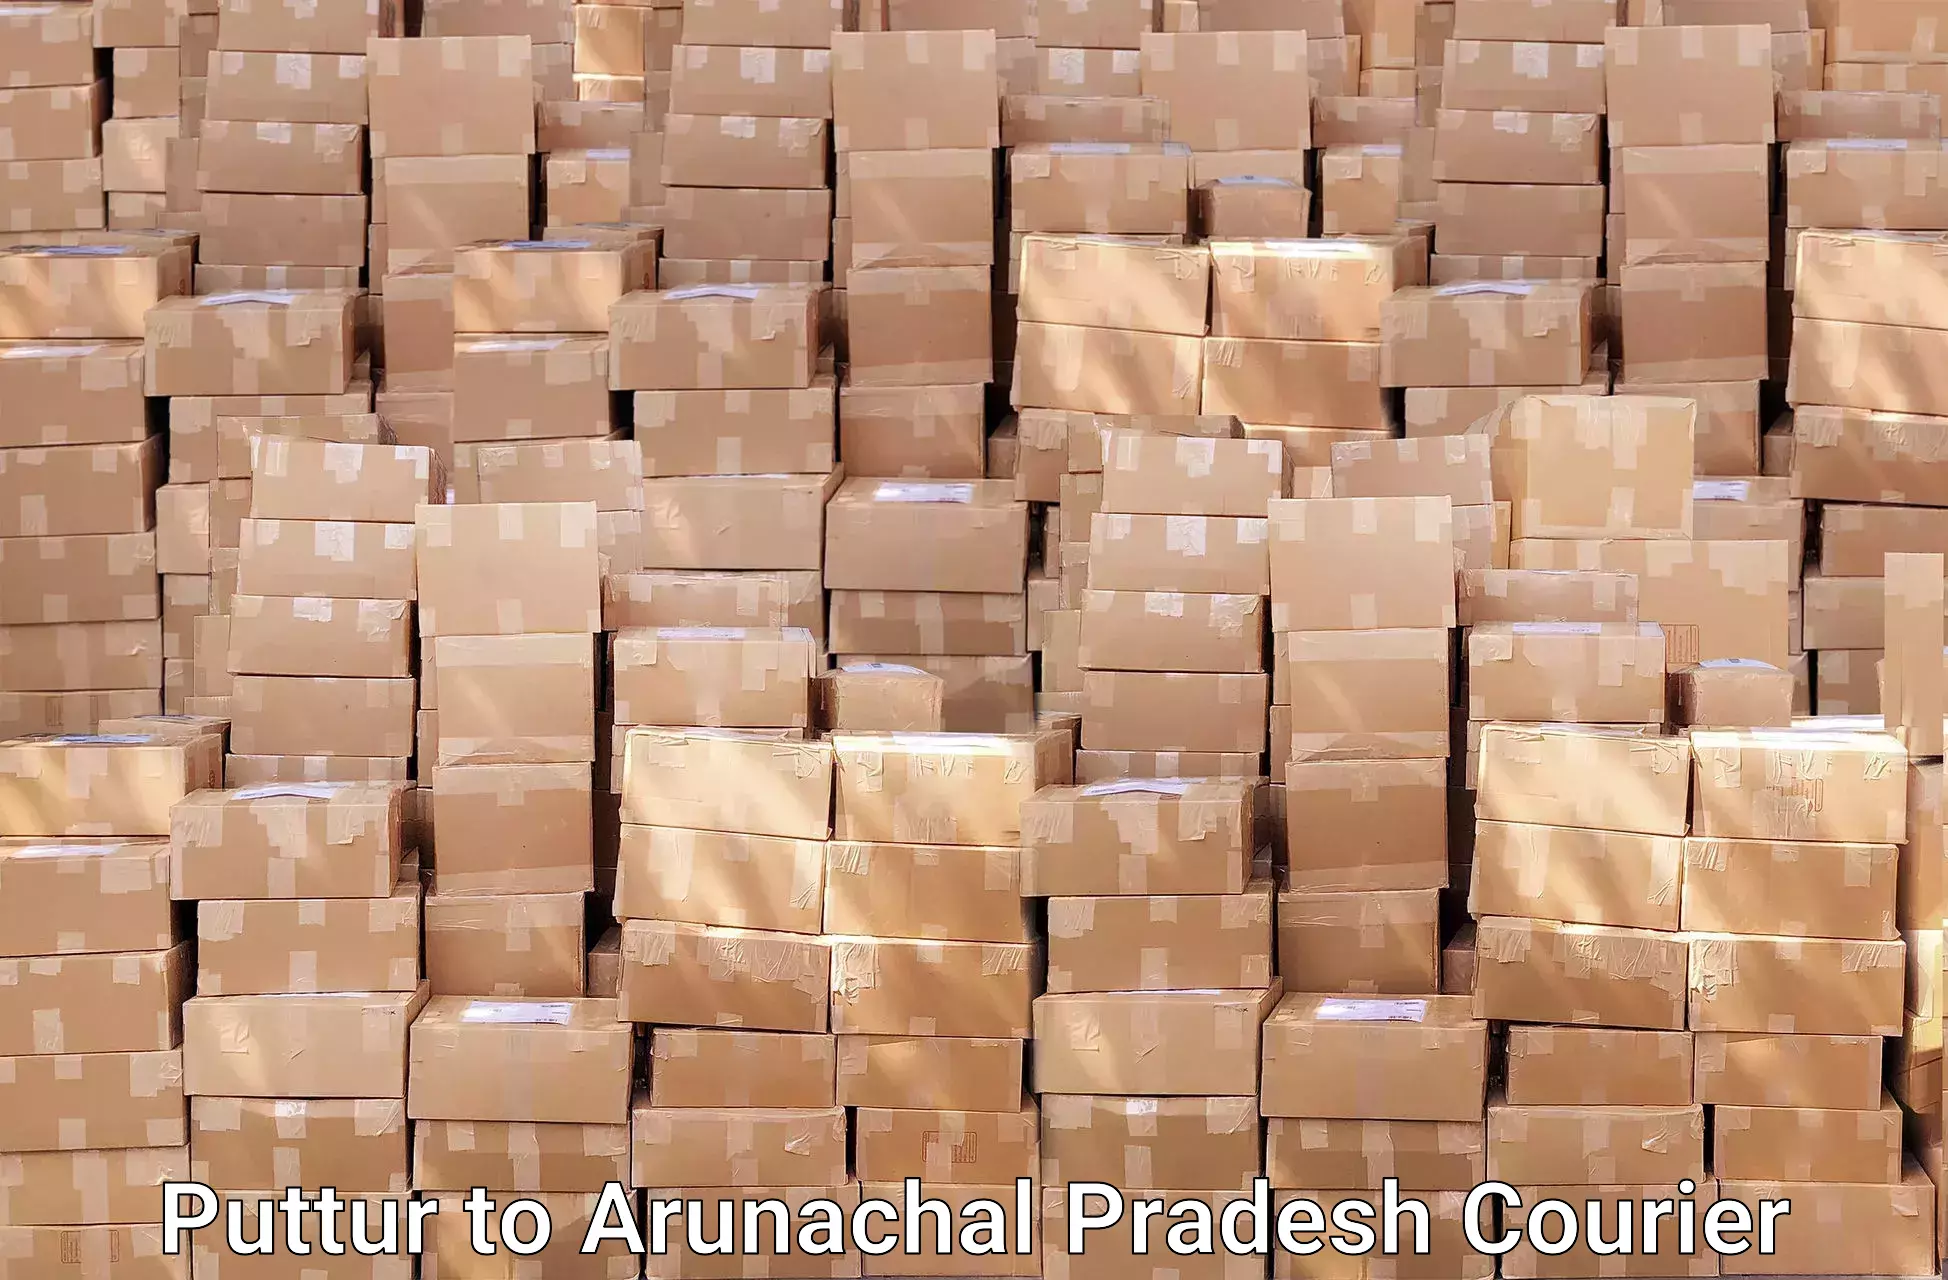 Furniture transport solutions Puttur to Arunachal Pradesh